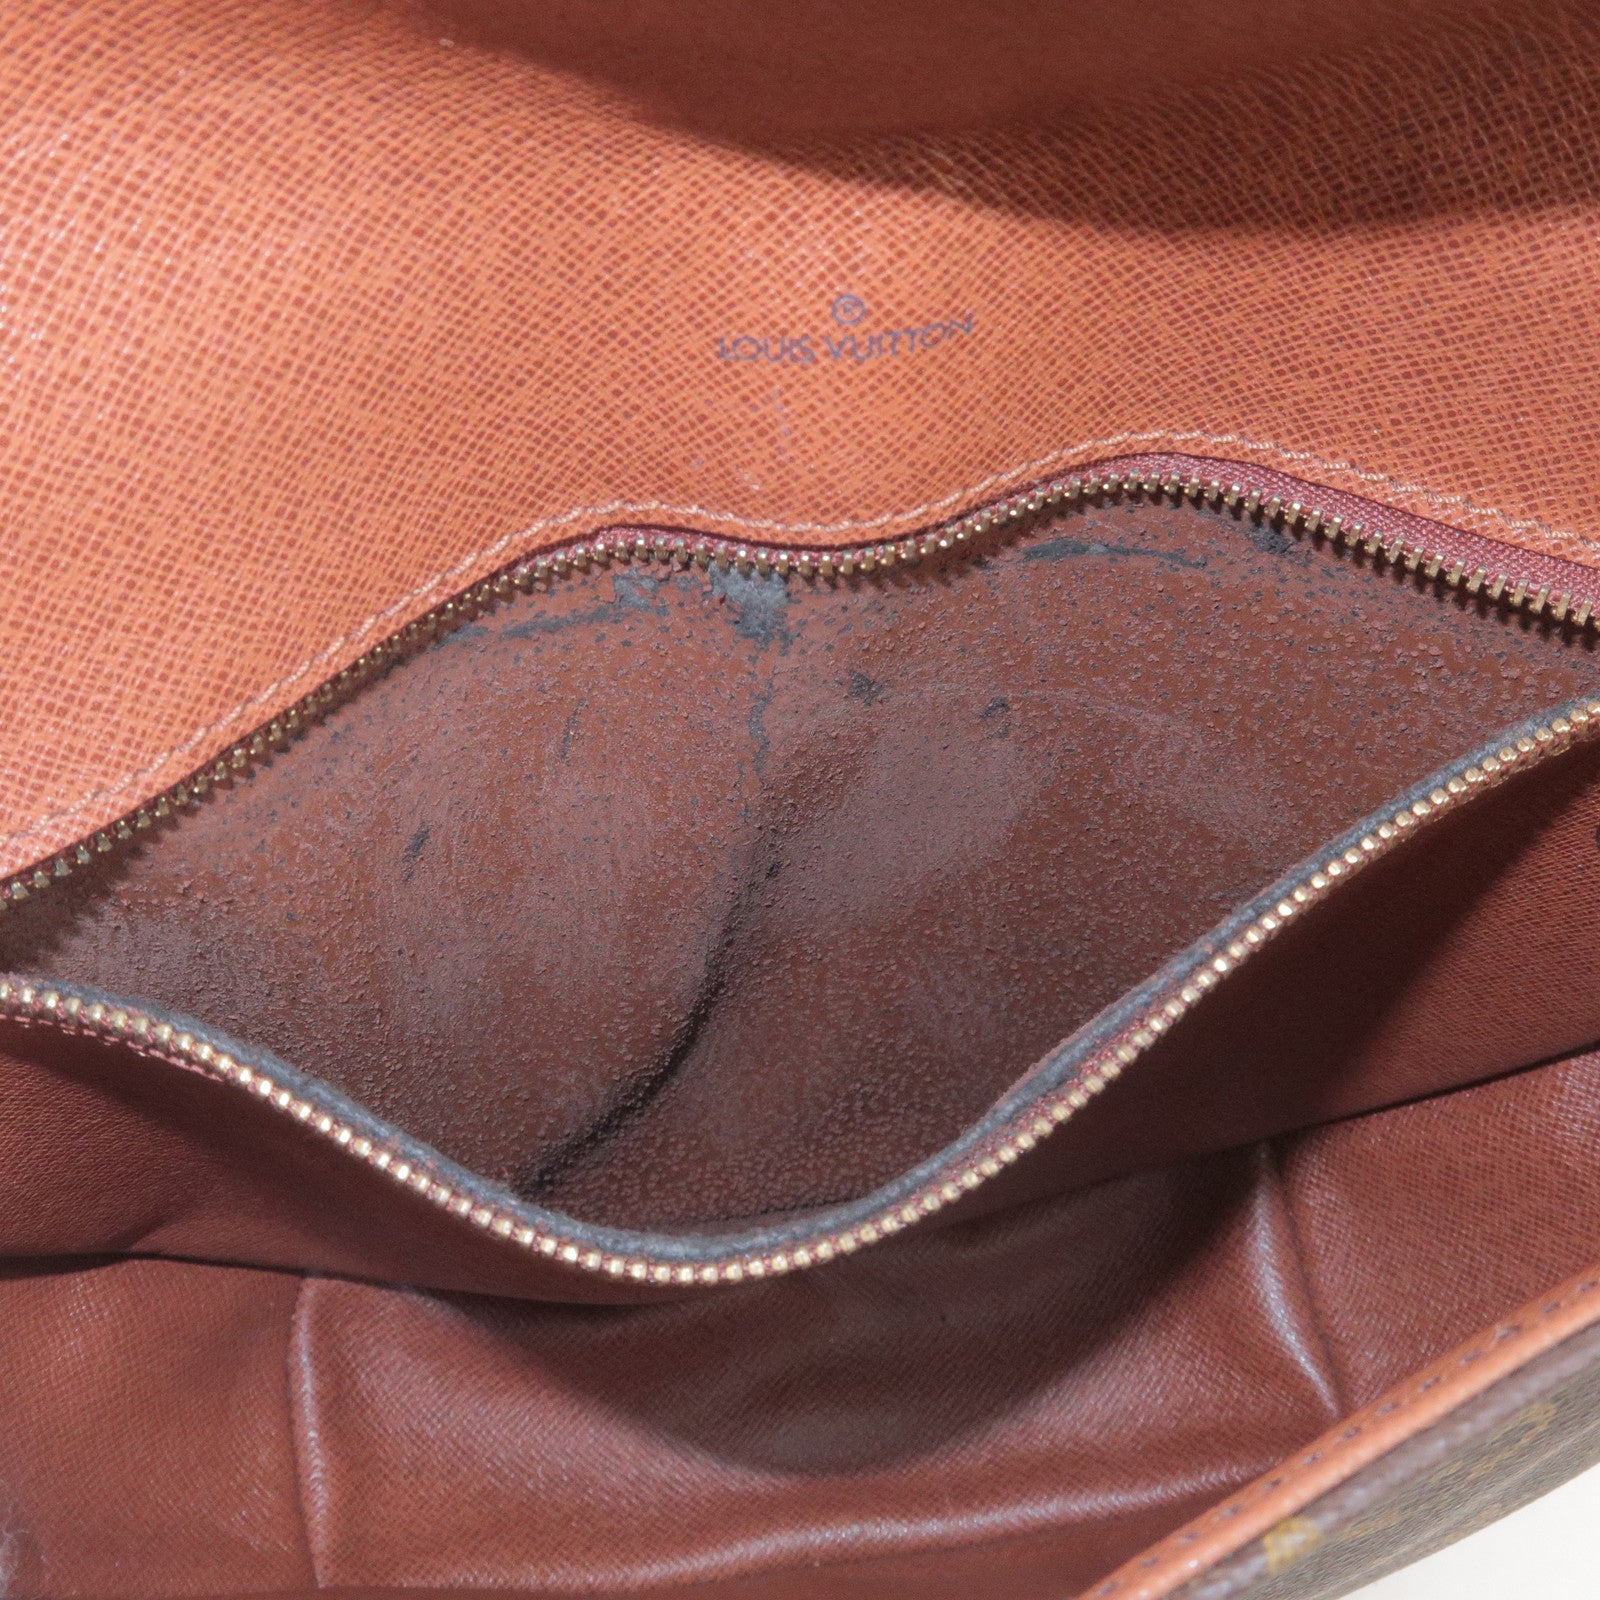 LOUIS VUITTON/Louis Vuitton Chantilly GM shoulder bag monogram M51232